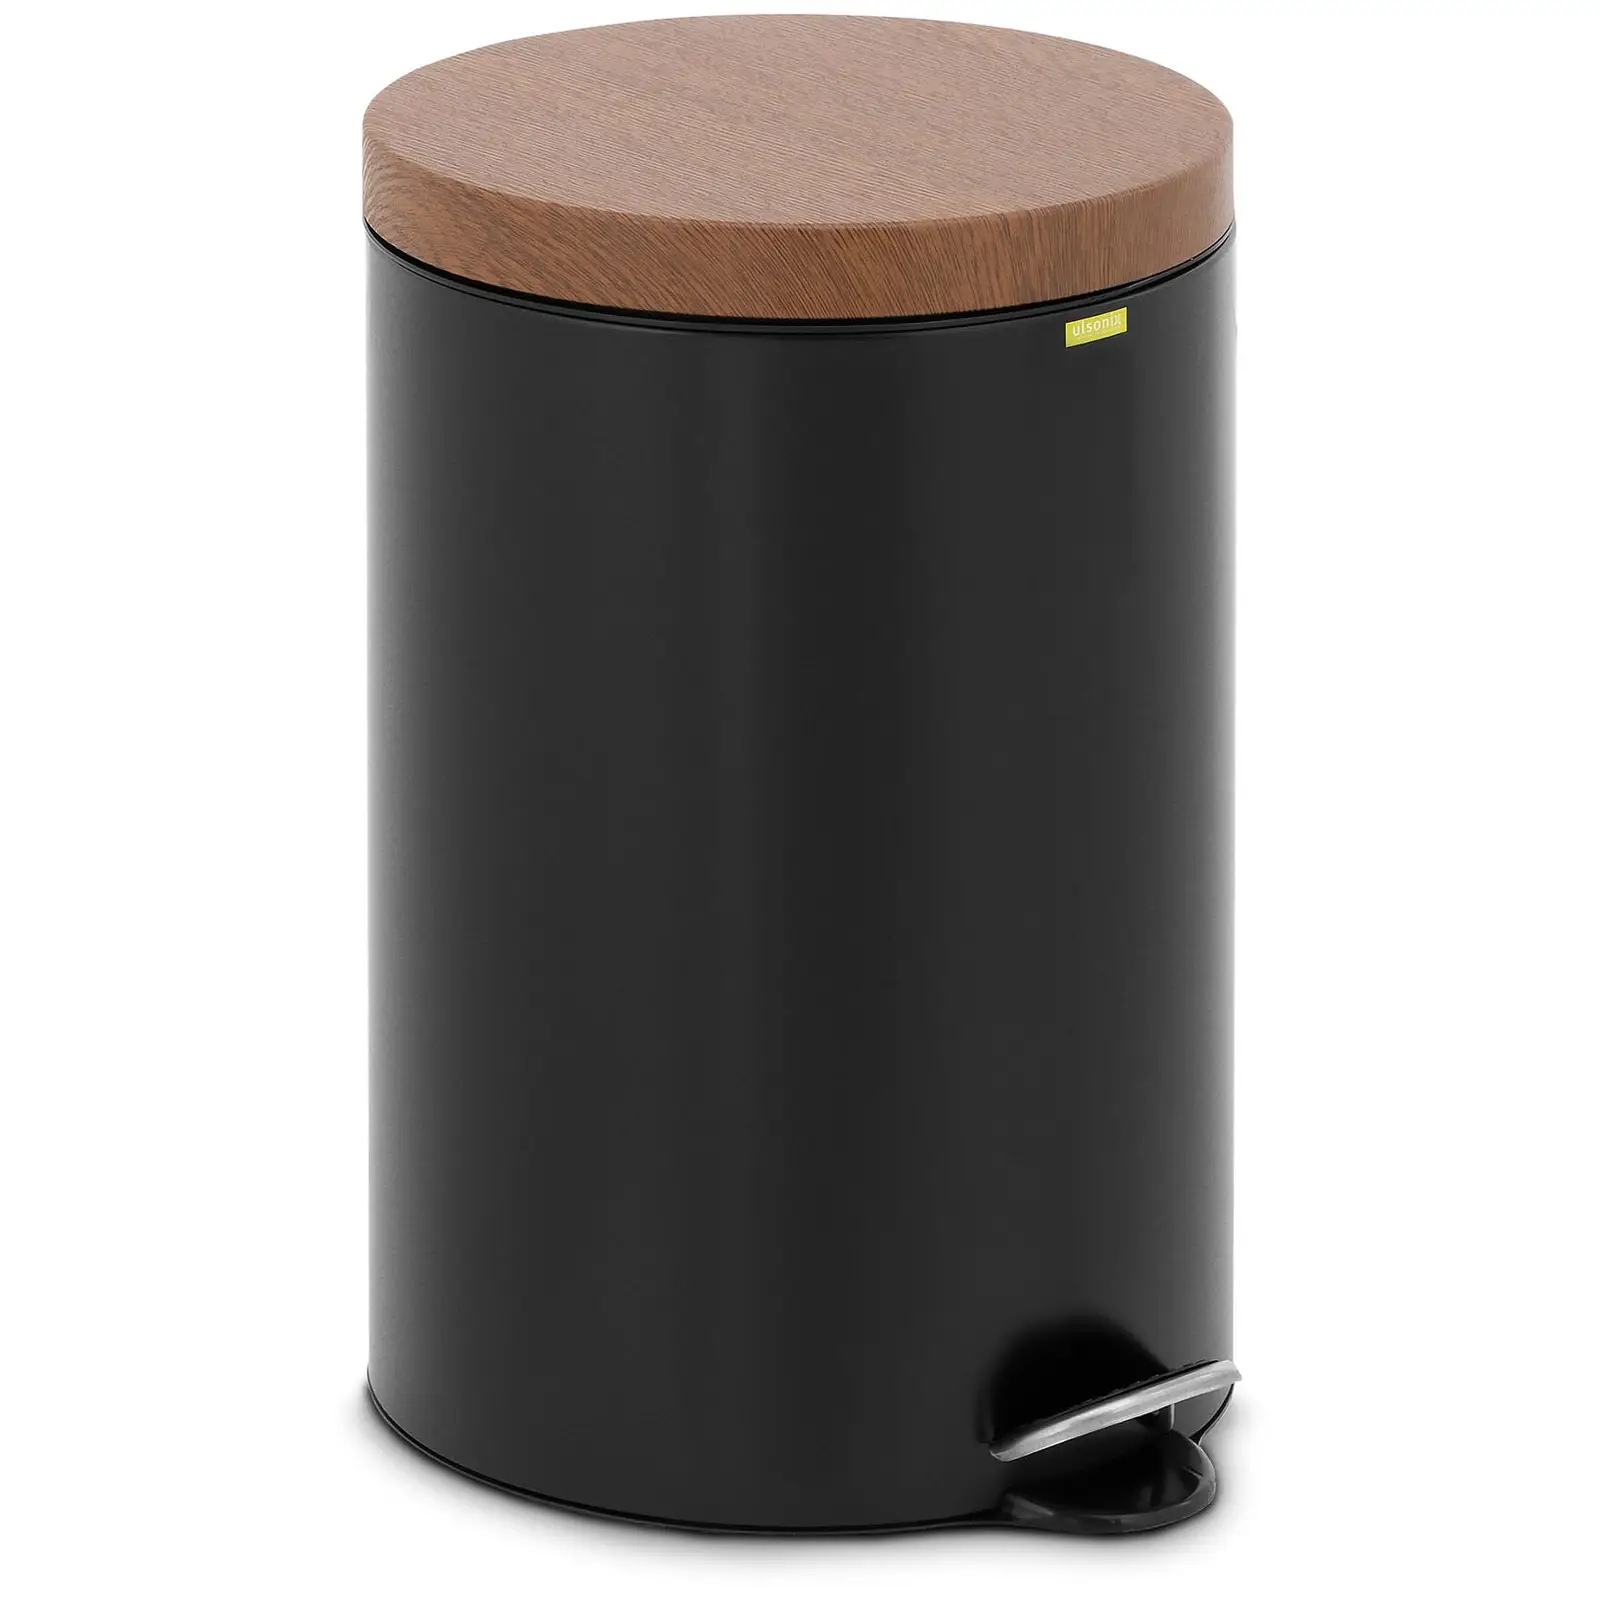 Nášlapný odpadkový koš s víkem ve vzhledu dřeva - 20 l - černý - lakovaná ocel